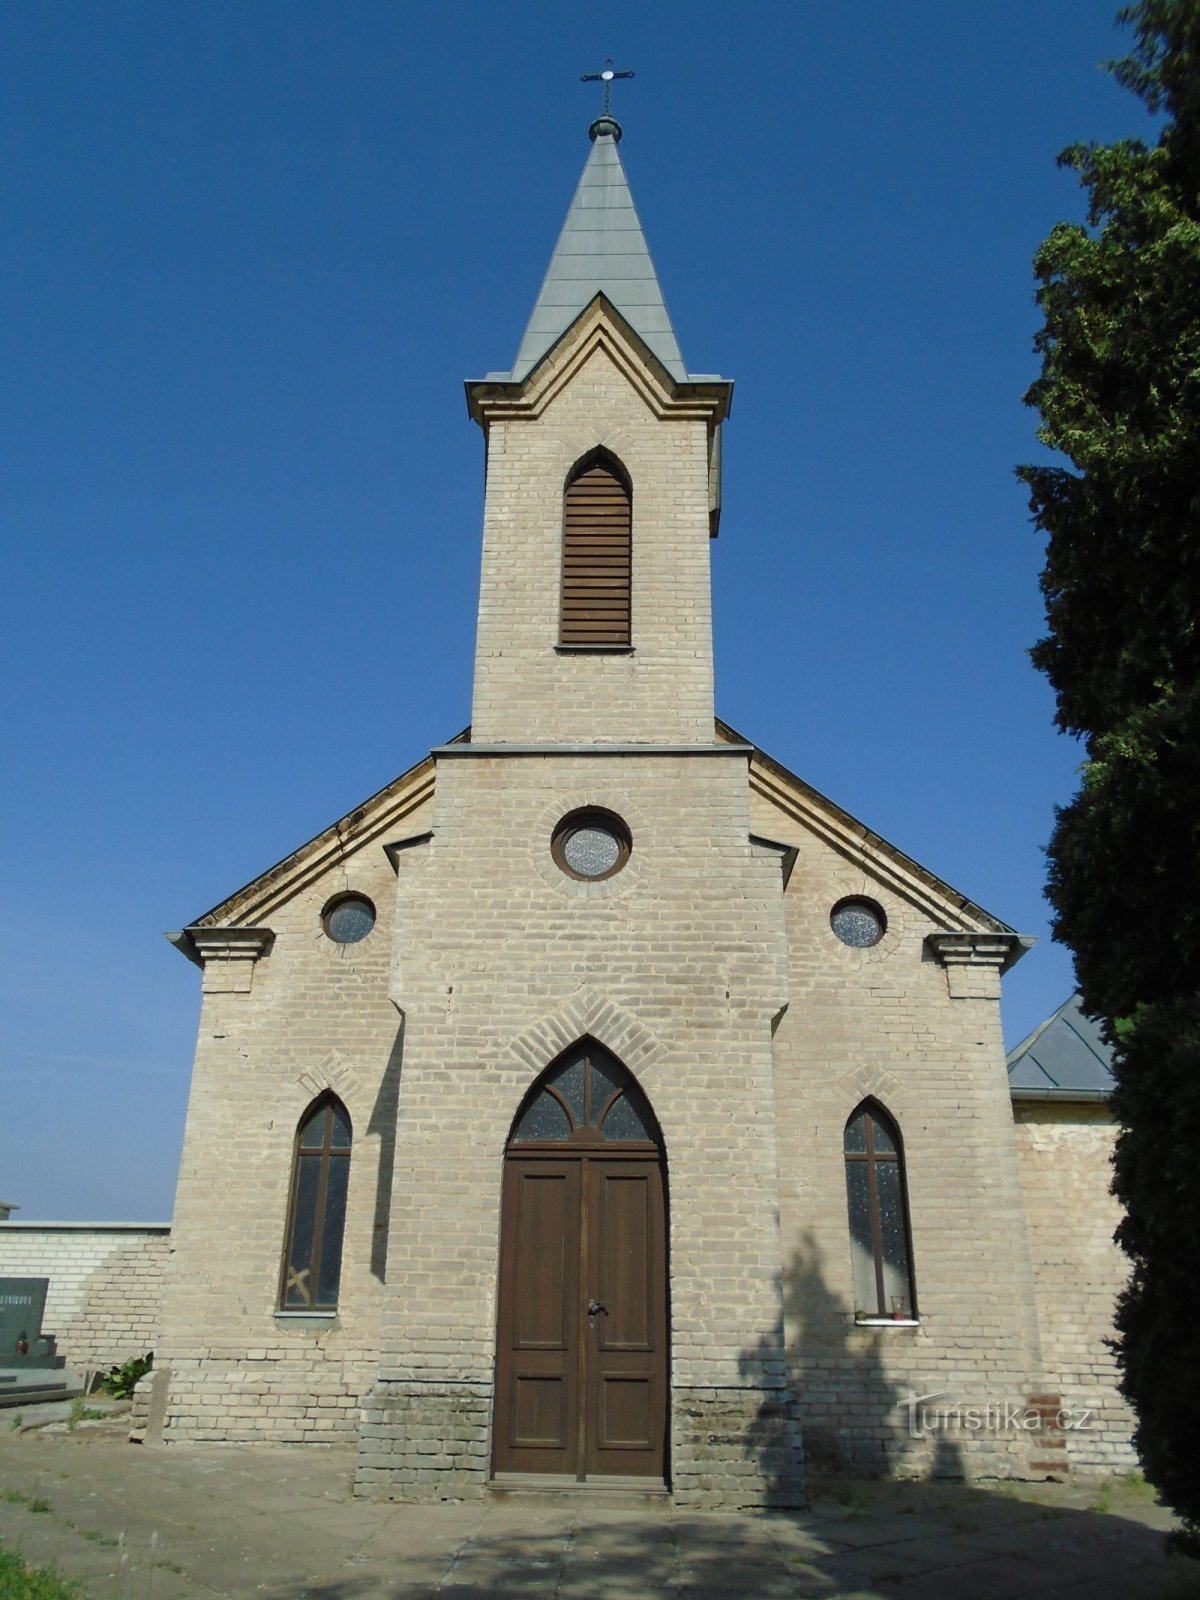 主复活的公墓礼拜堂 (Sedlice)